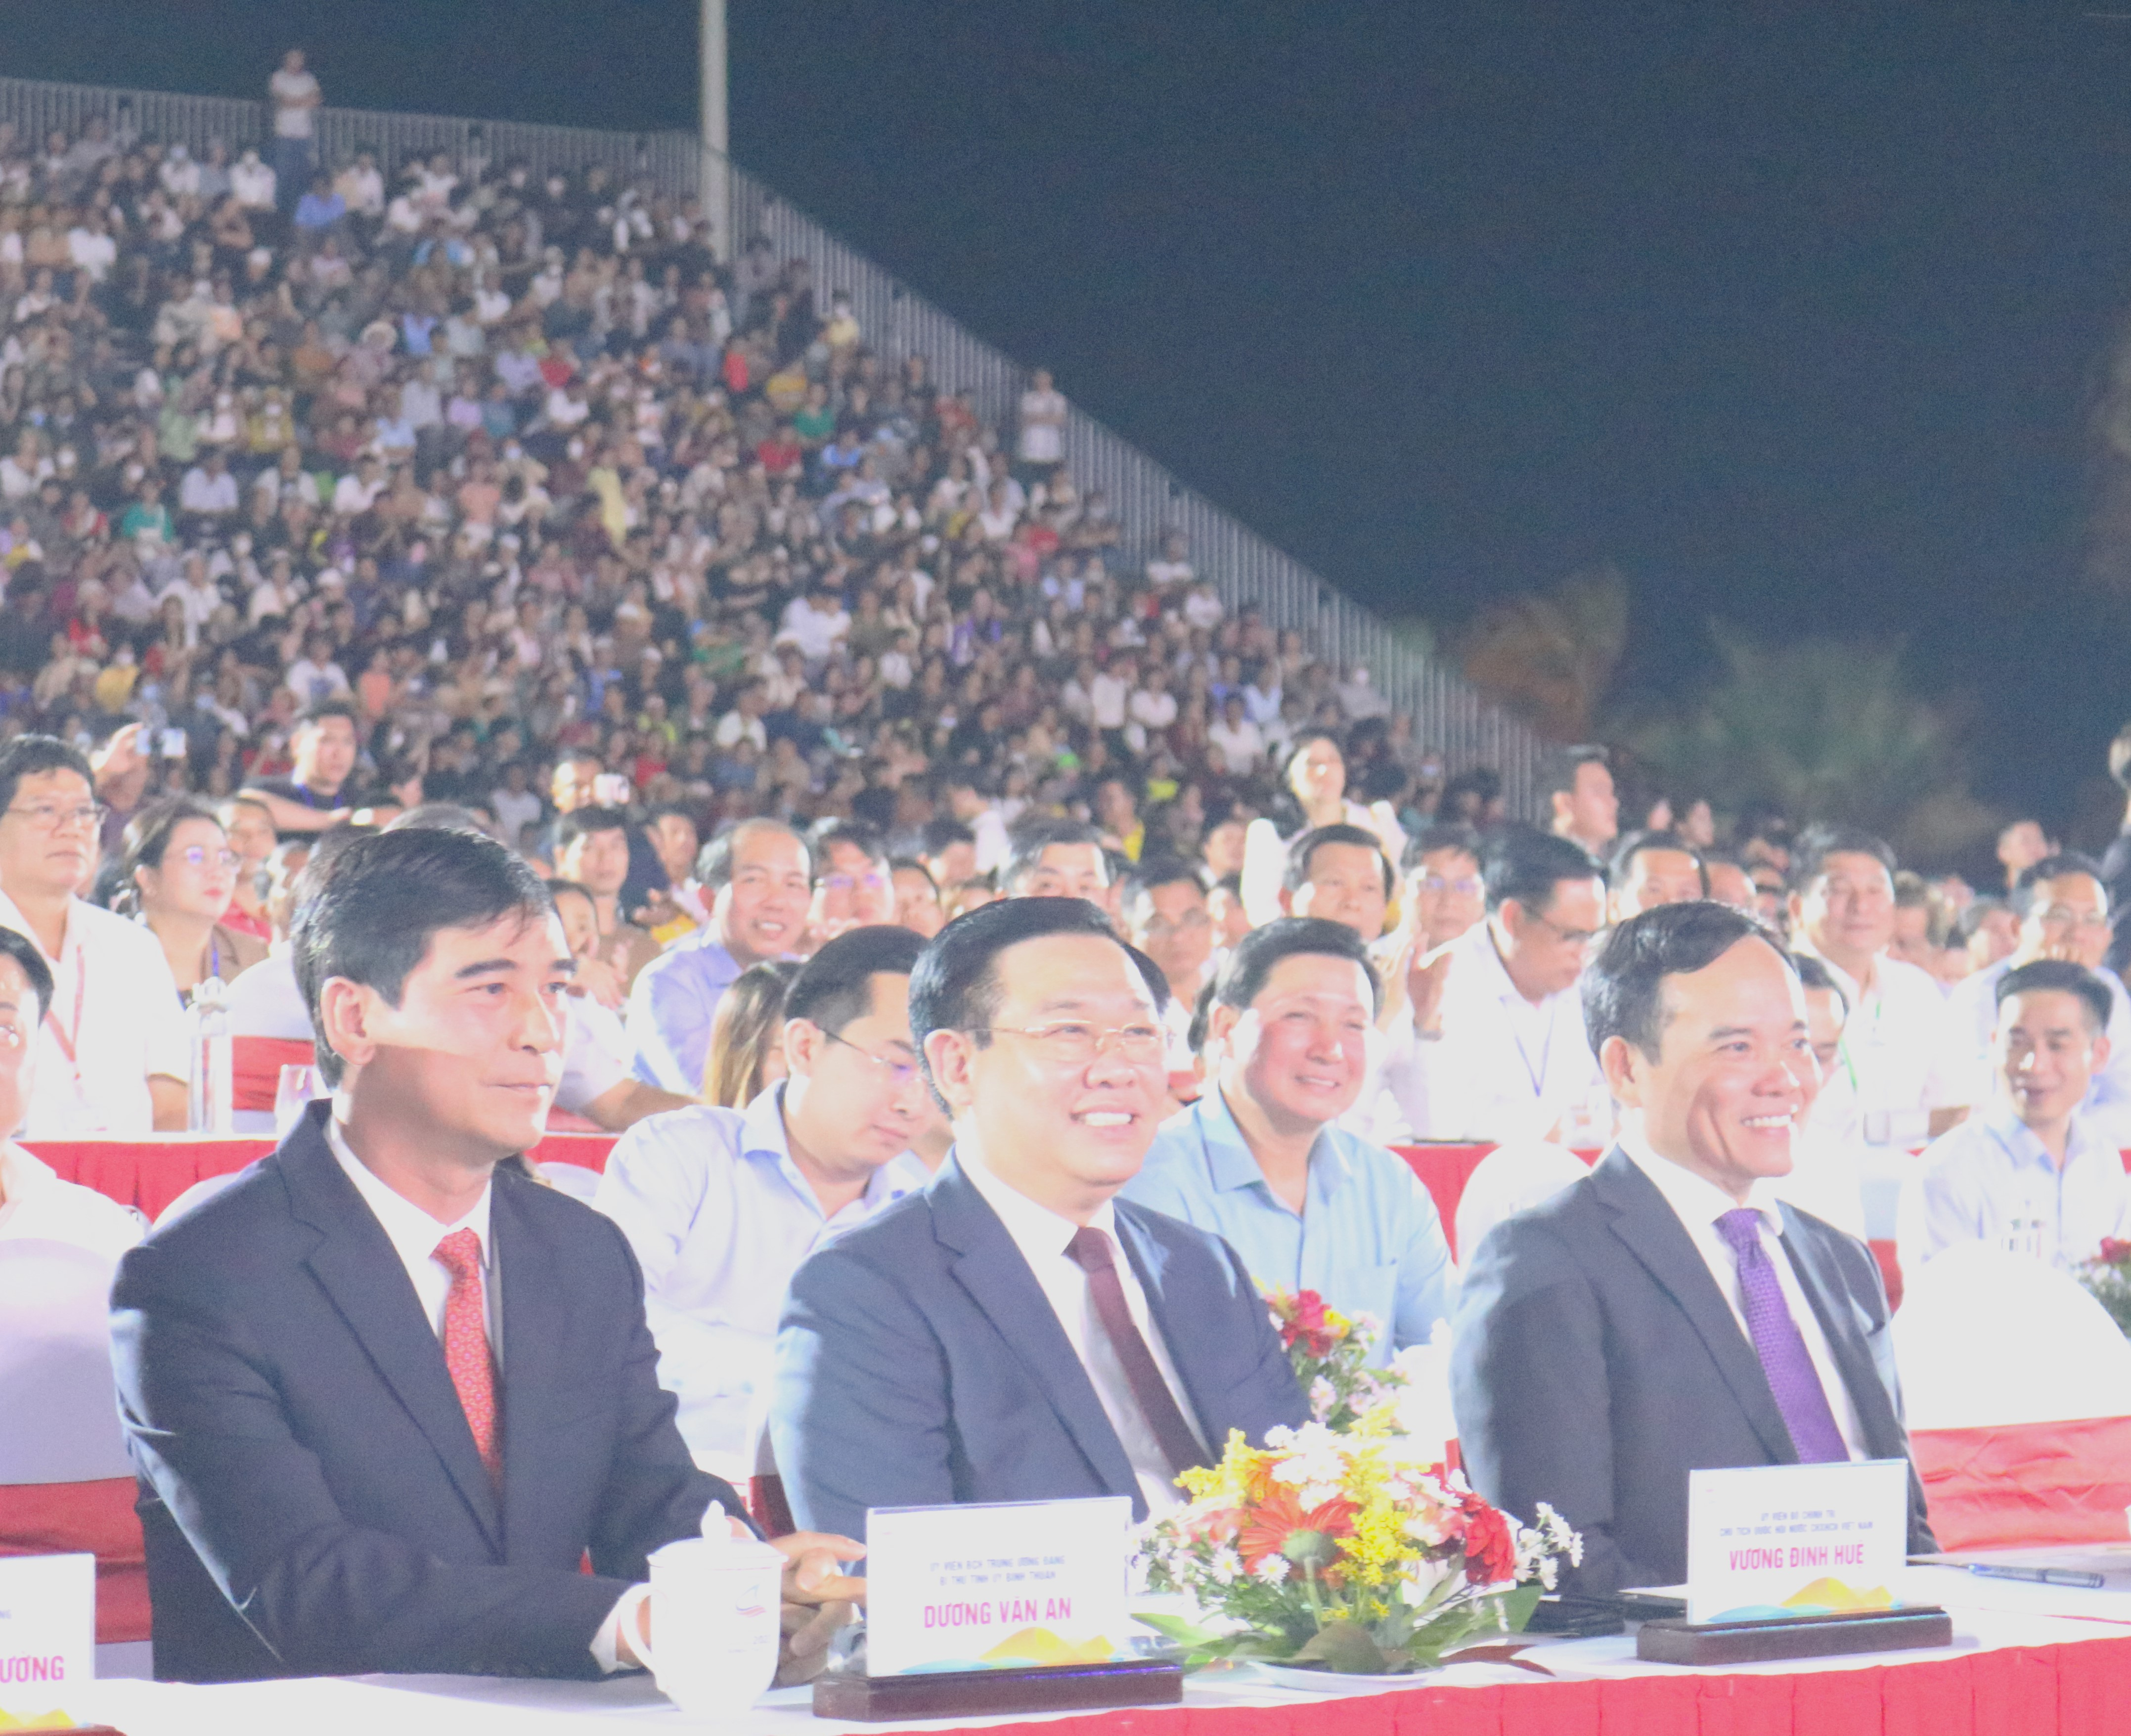 Bí thư Tỉnh ủy tỉnh Bình Thuận - Dương Văn An (bìa trái) tiếp đón Chủ tịch Quốc Hội - Vương Đình Huệ (giữa) và Phó Thủ tướng Chính Phủ - Trần Lưu Quang (bìa phải) tại lễ khai mạc Năm du lịch quốc gia 2023.